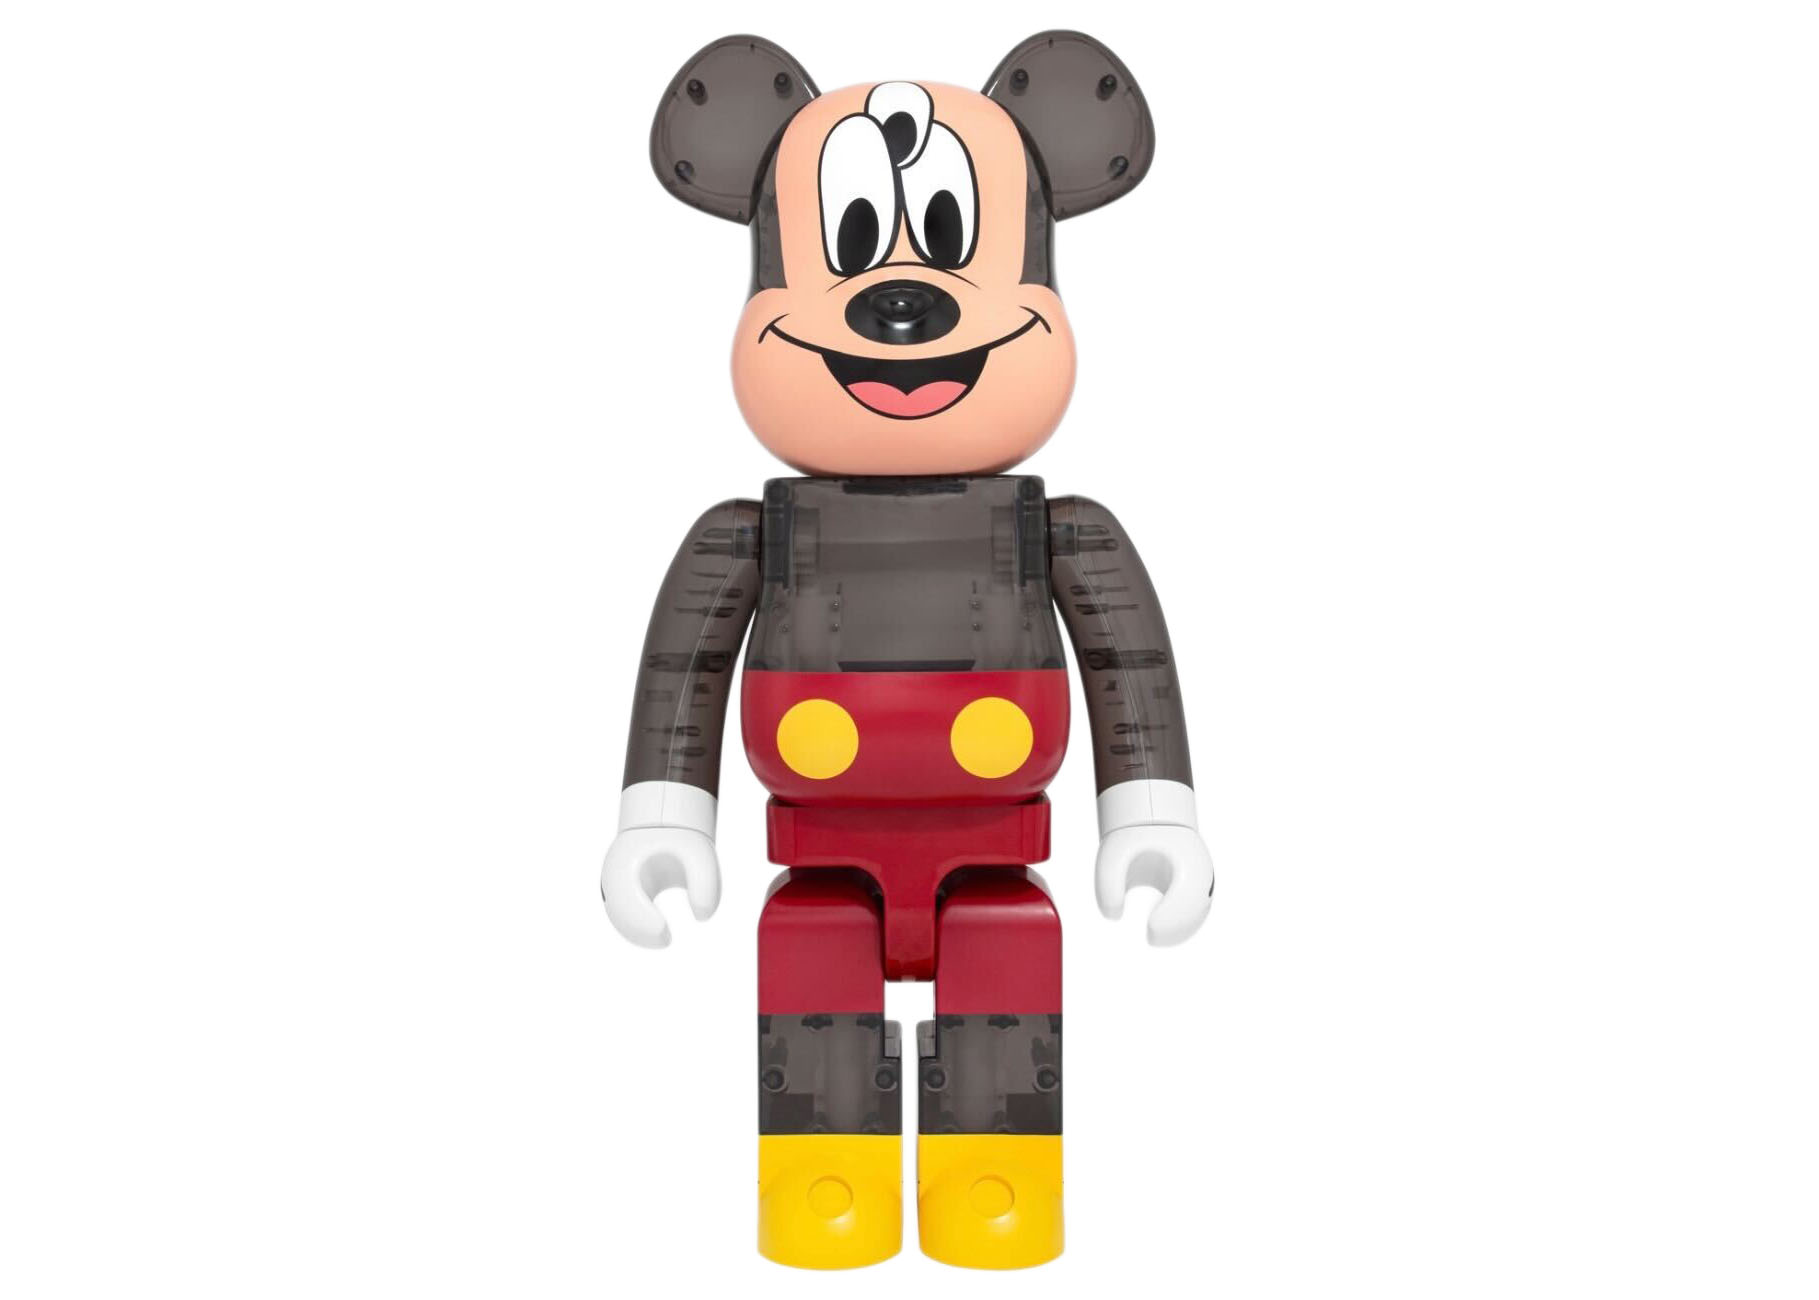 ベアブリック × クロット × 3125C × ディズニー 3つ目 ミッキーマウス 